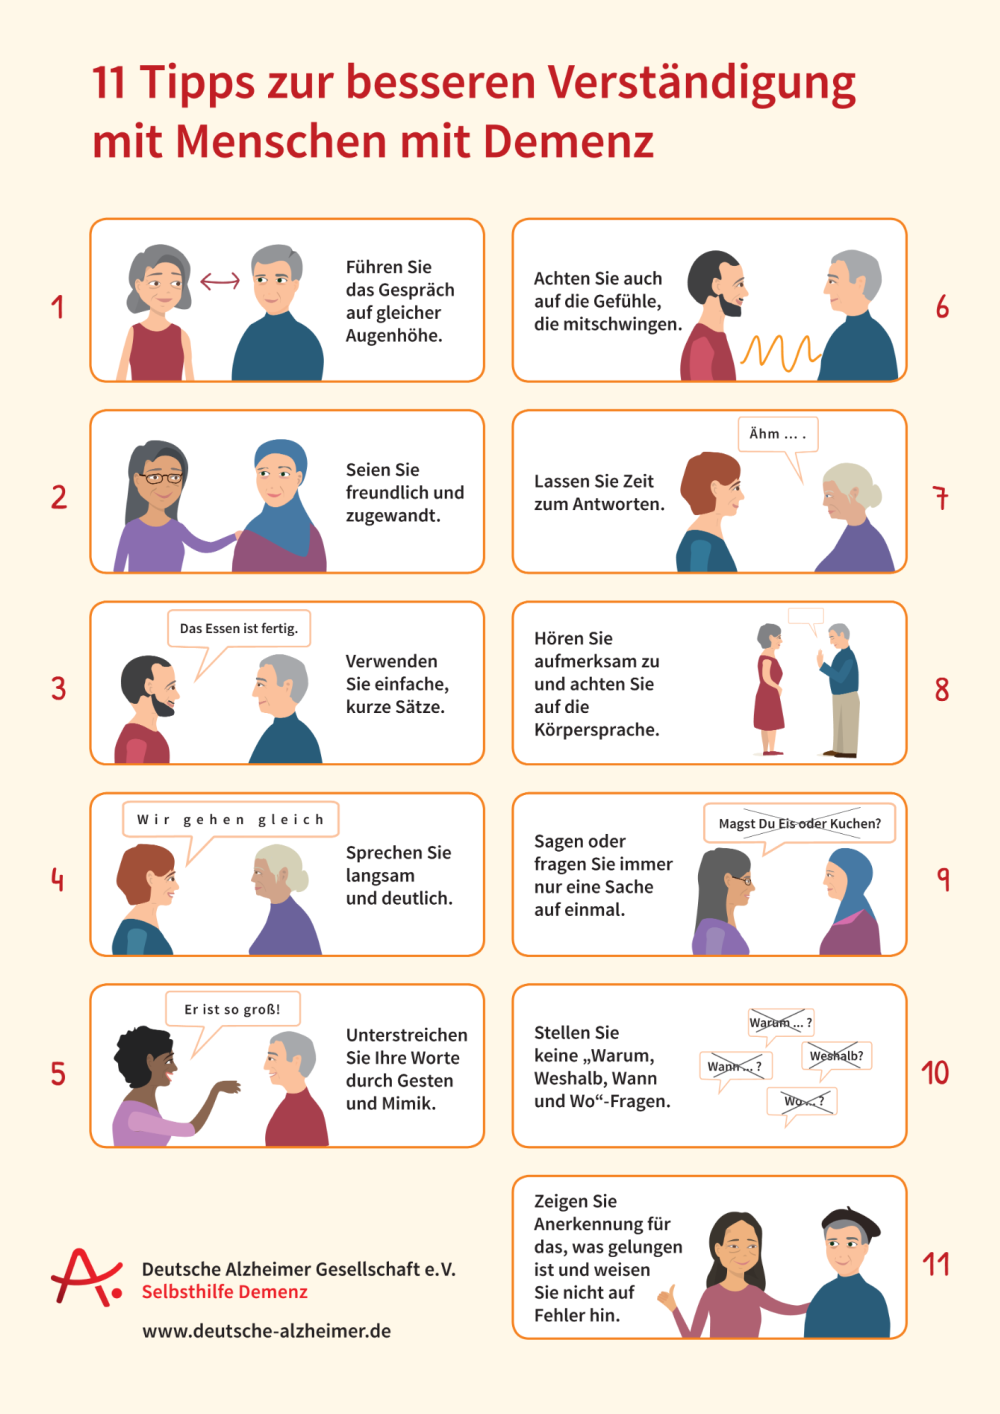 Infoblatt "11 Tipps zur besseren Verständigung mit Menschen mit Demenz"